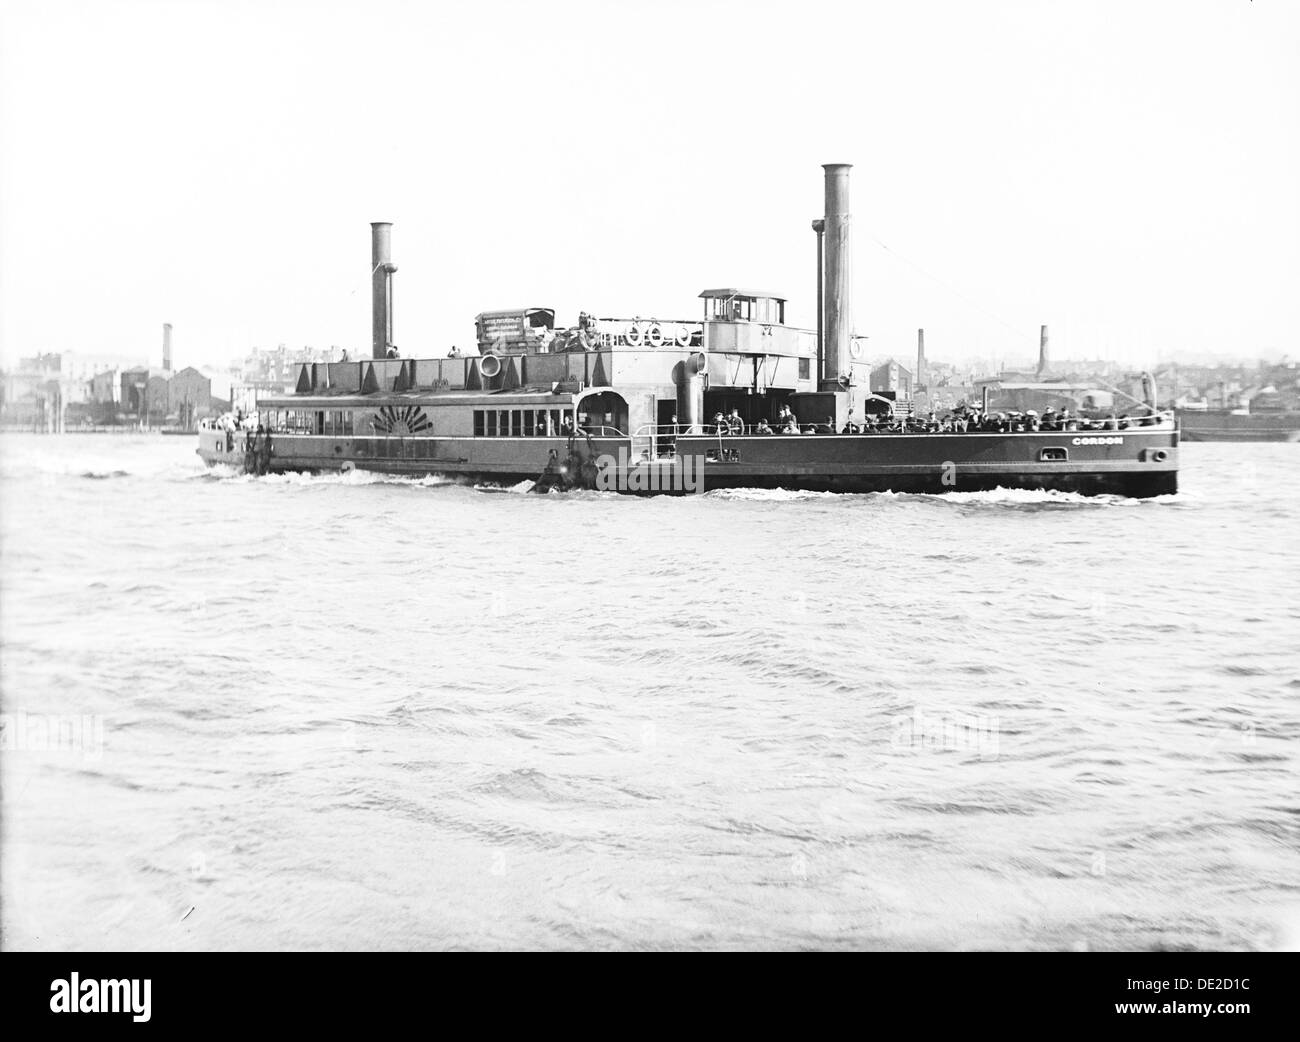 Gordon 'Ferry' sur la Tamise, Londres, c1905. Artiste : Inconnu Banque D'Images